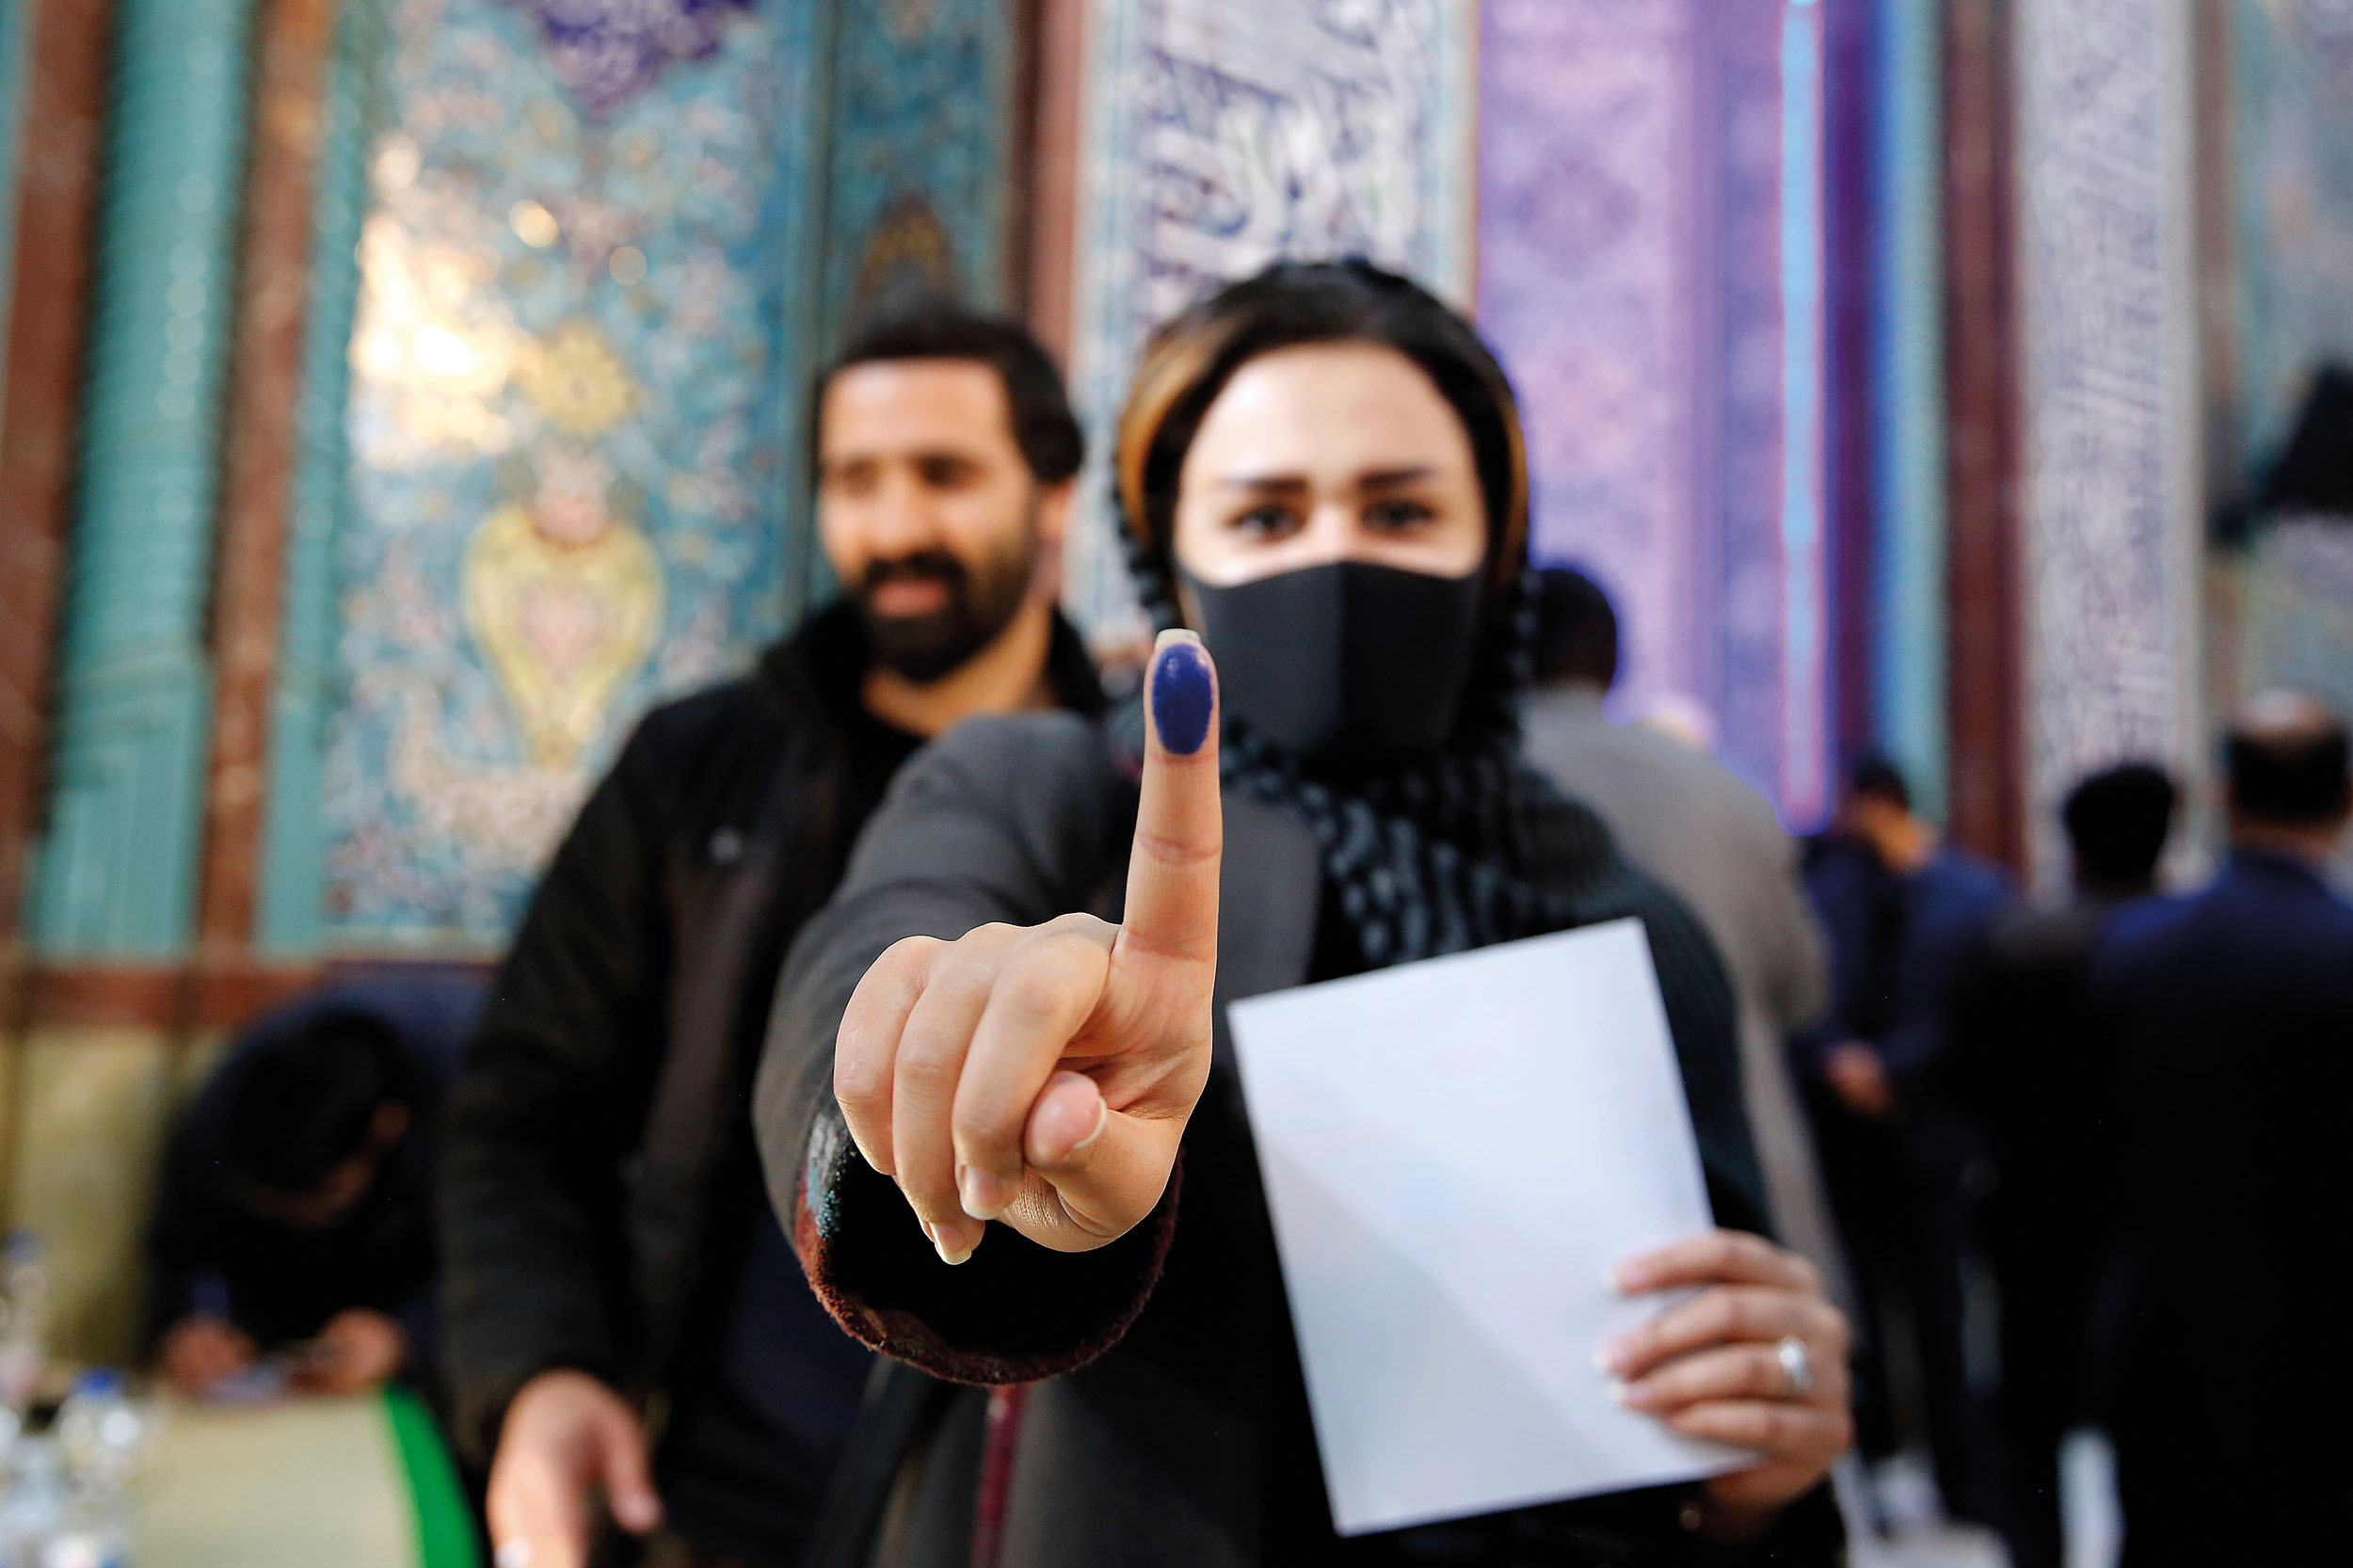 Nesmazatelný inkoust má zamezit tomu, aby šla tato Íránka hlasovat podruhé.